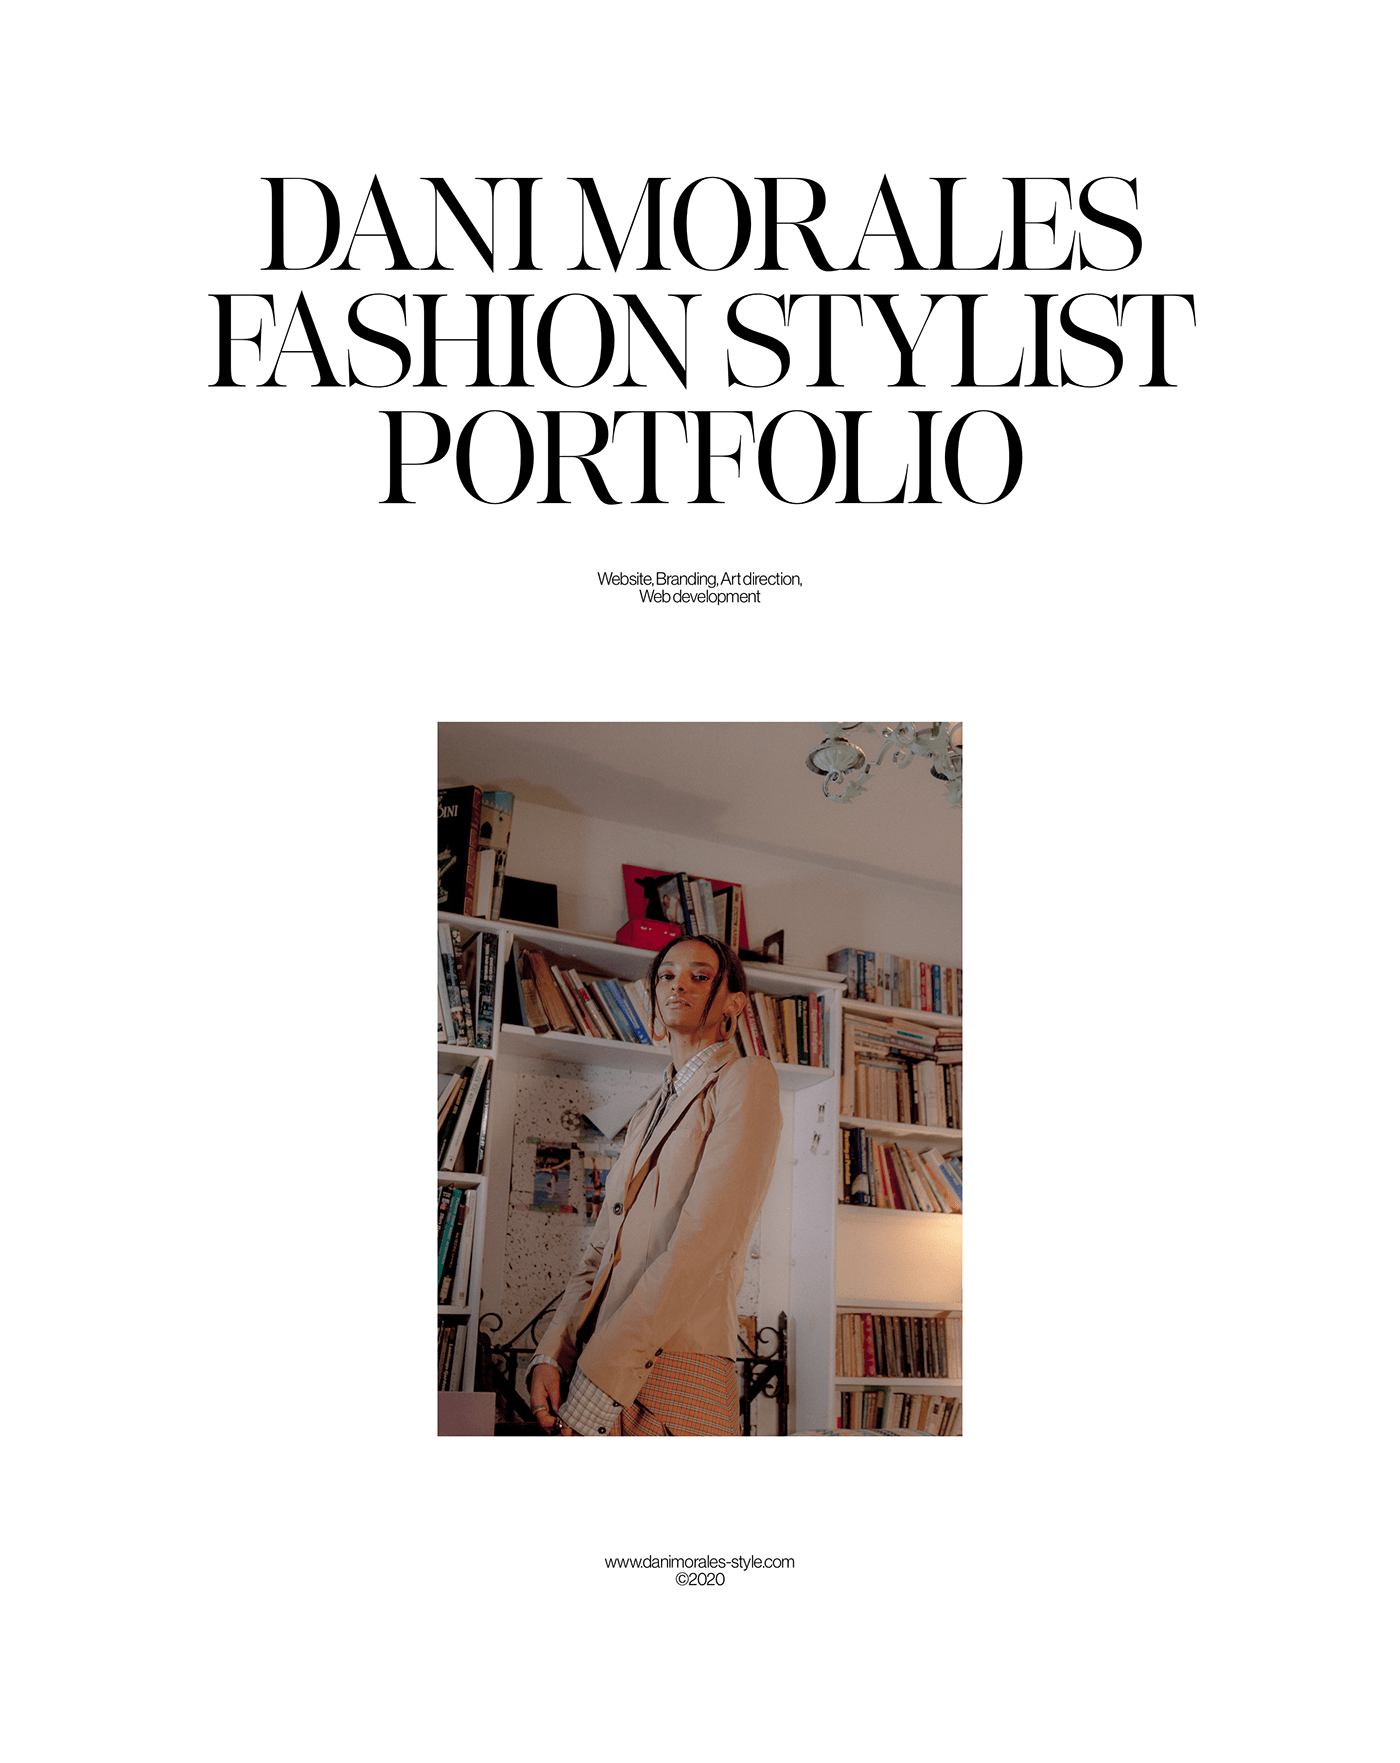 Portfolios design idea #125: Dani Morales Portfolio